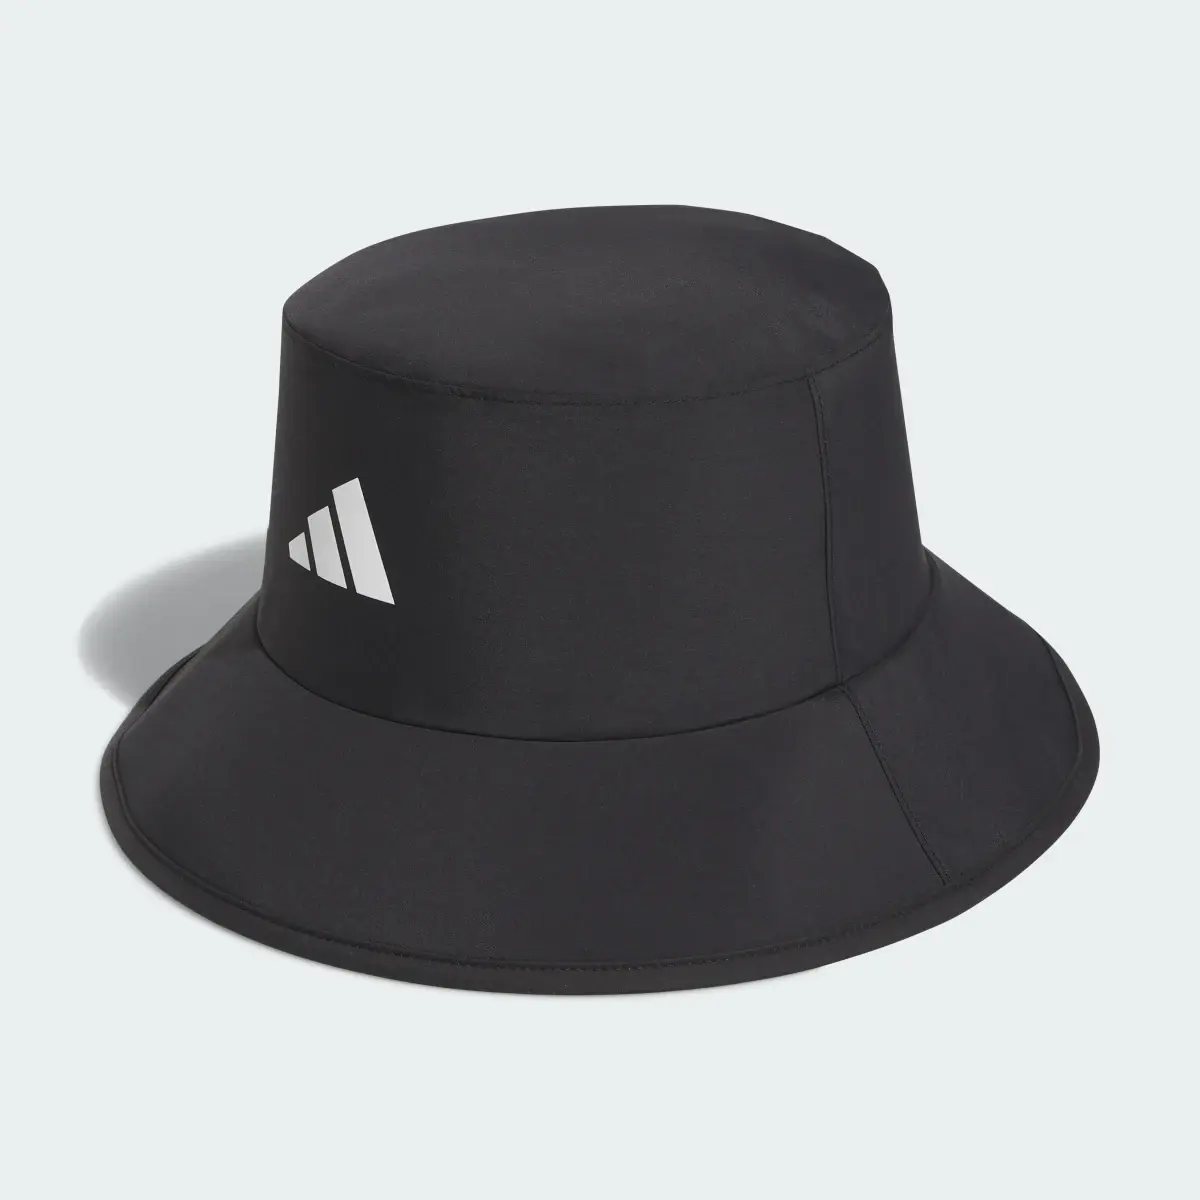 Adidas RAIN.RDY Bucket Hat. 2